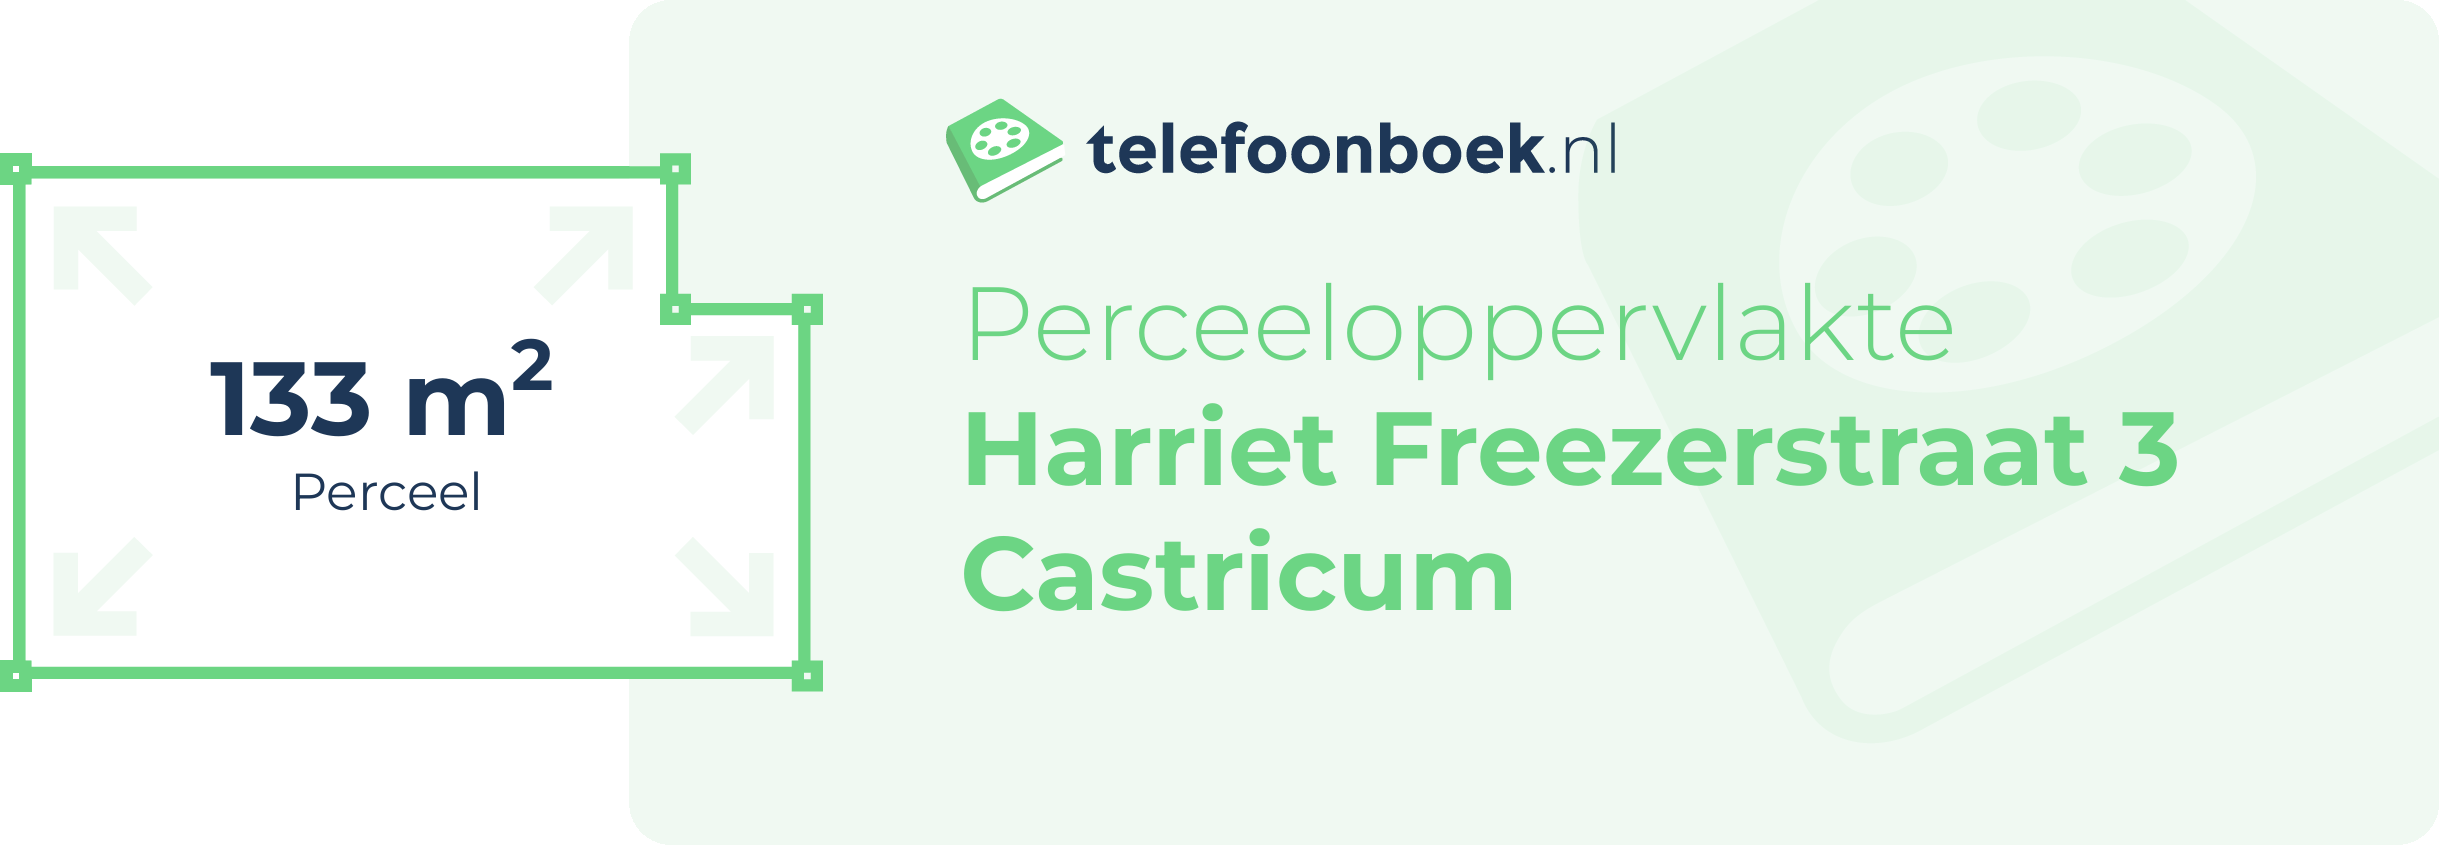 Perceeloppervlakte Harriet Freezerstraat 3 Castricum